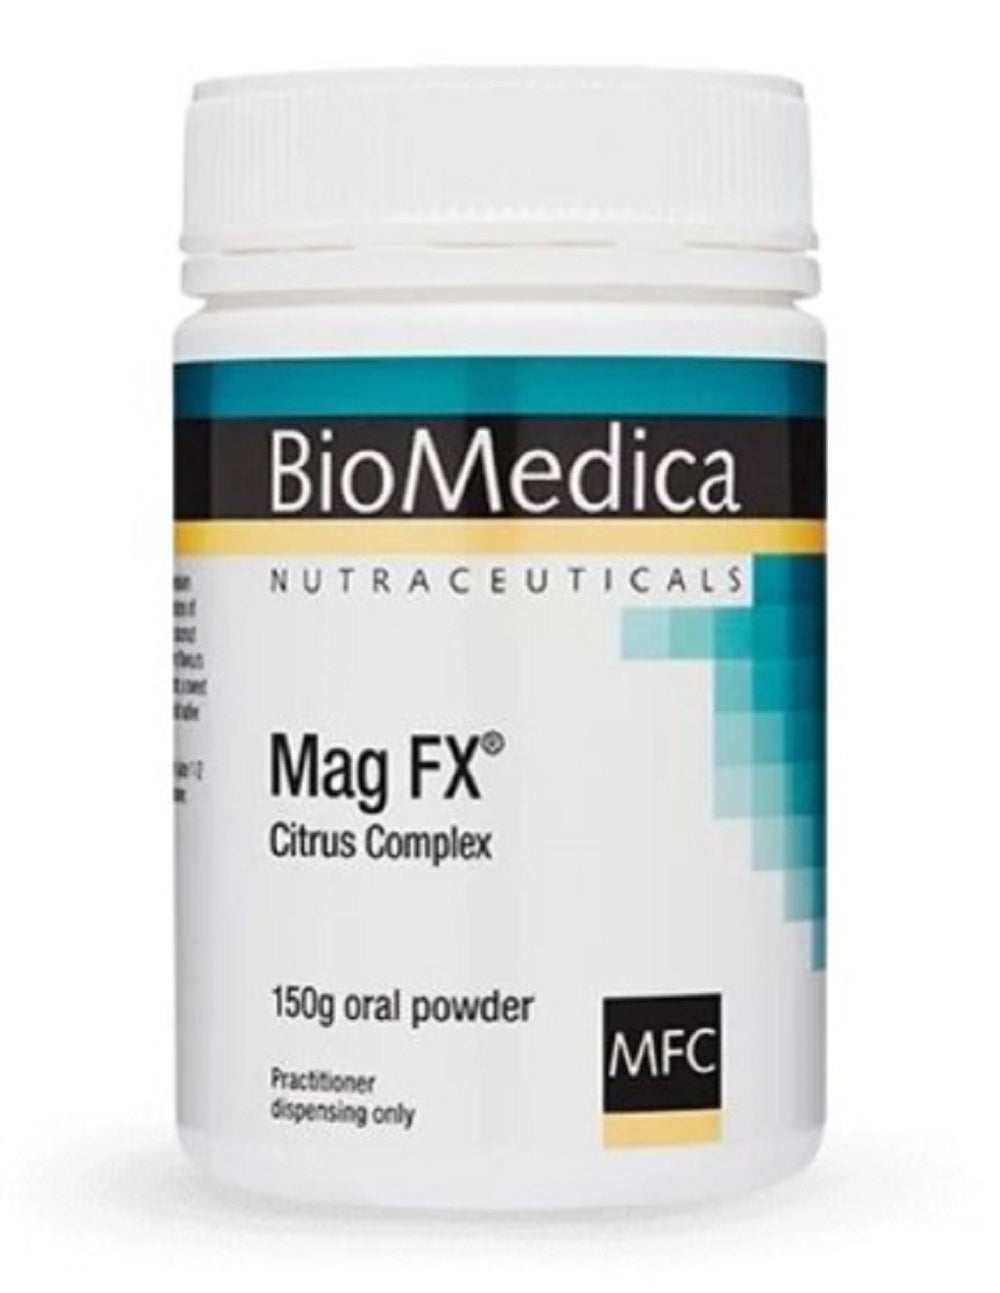 BioMedica Mag FX Citrus Complex 150g